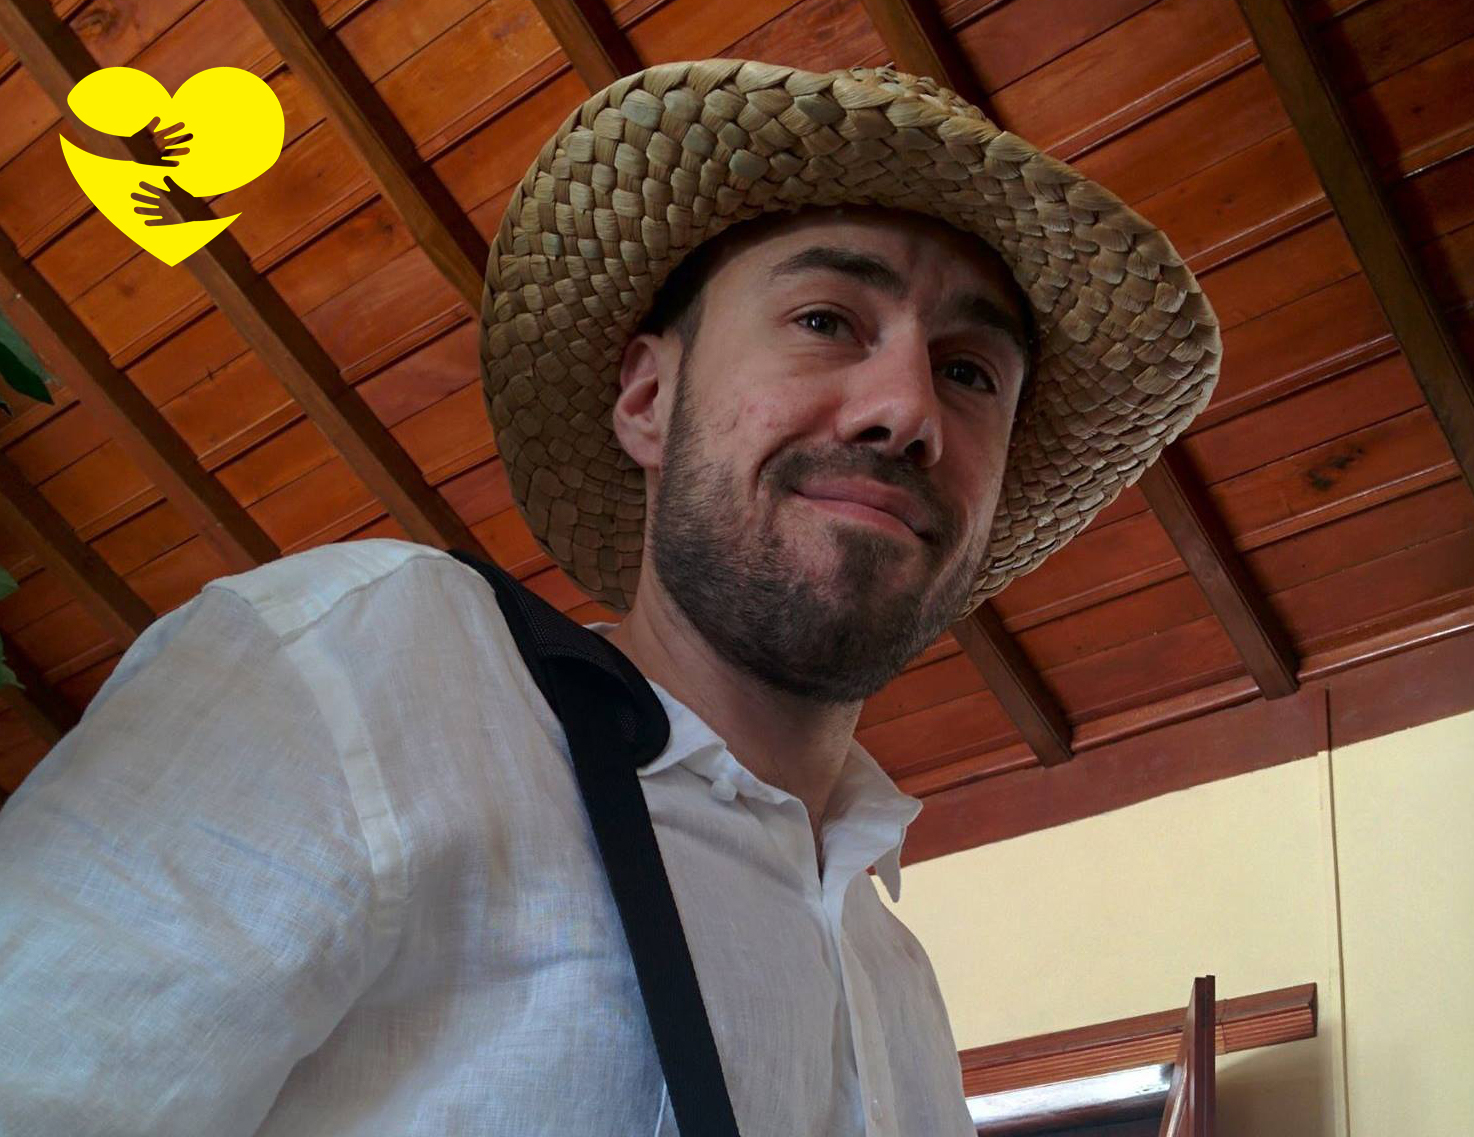 Kevin, coiffé d’un chapeau de paille et sourit pour la photo. Un dessin de bras serrant un cœur jaune illustré se trouve dans le coin supérieur gauche de la photo.